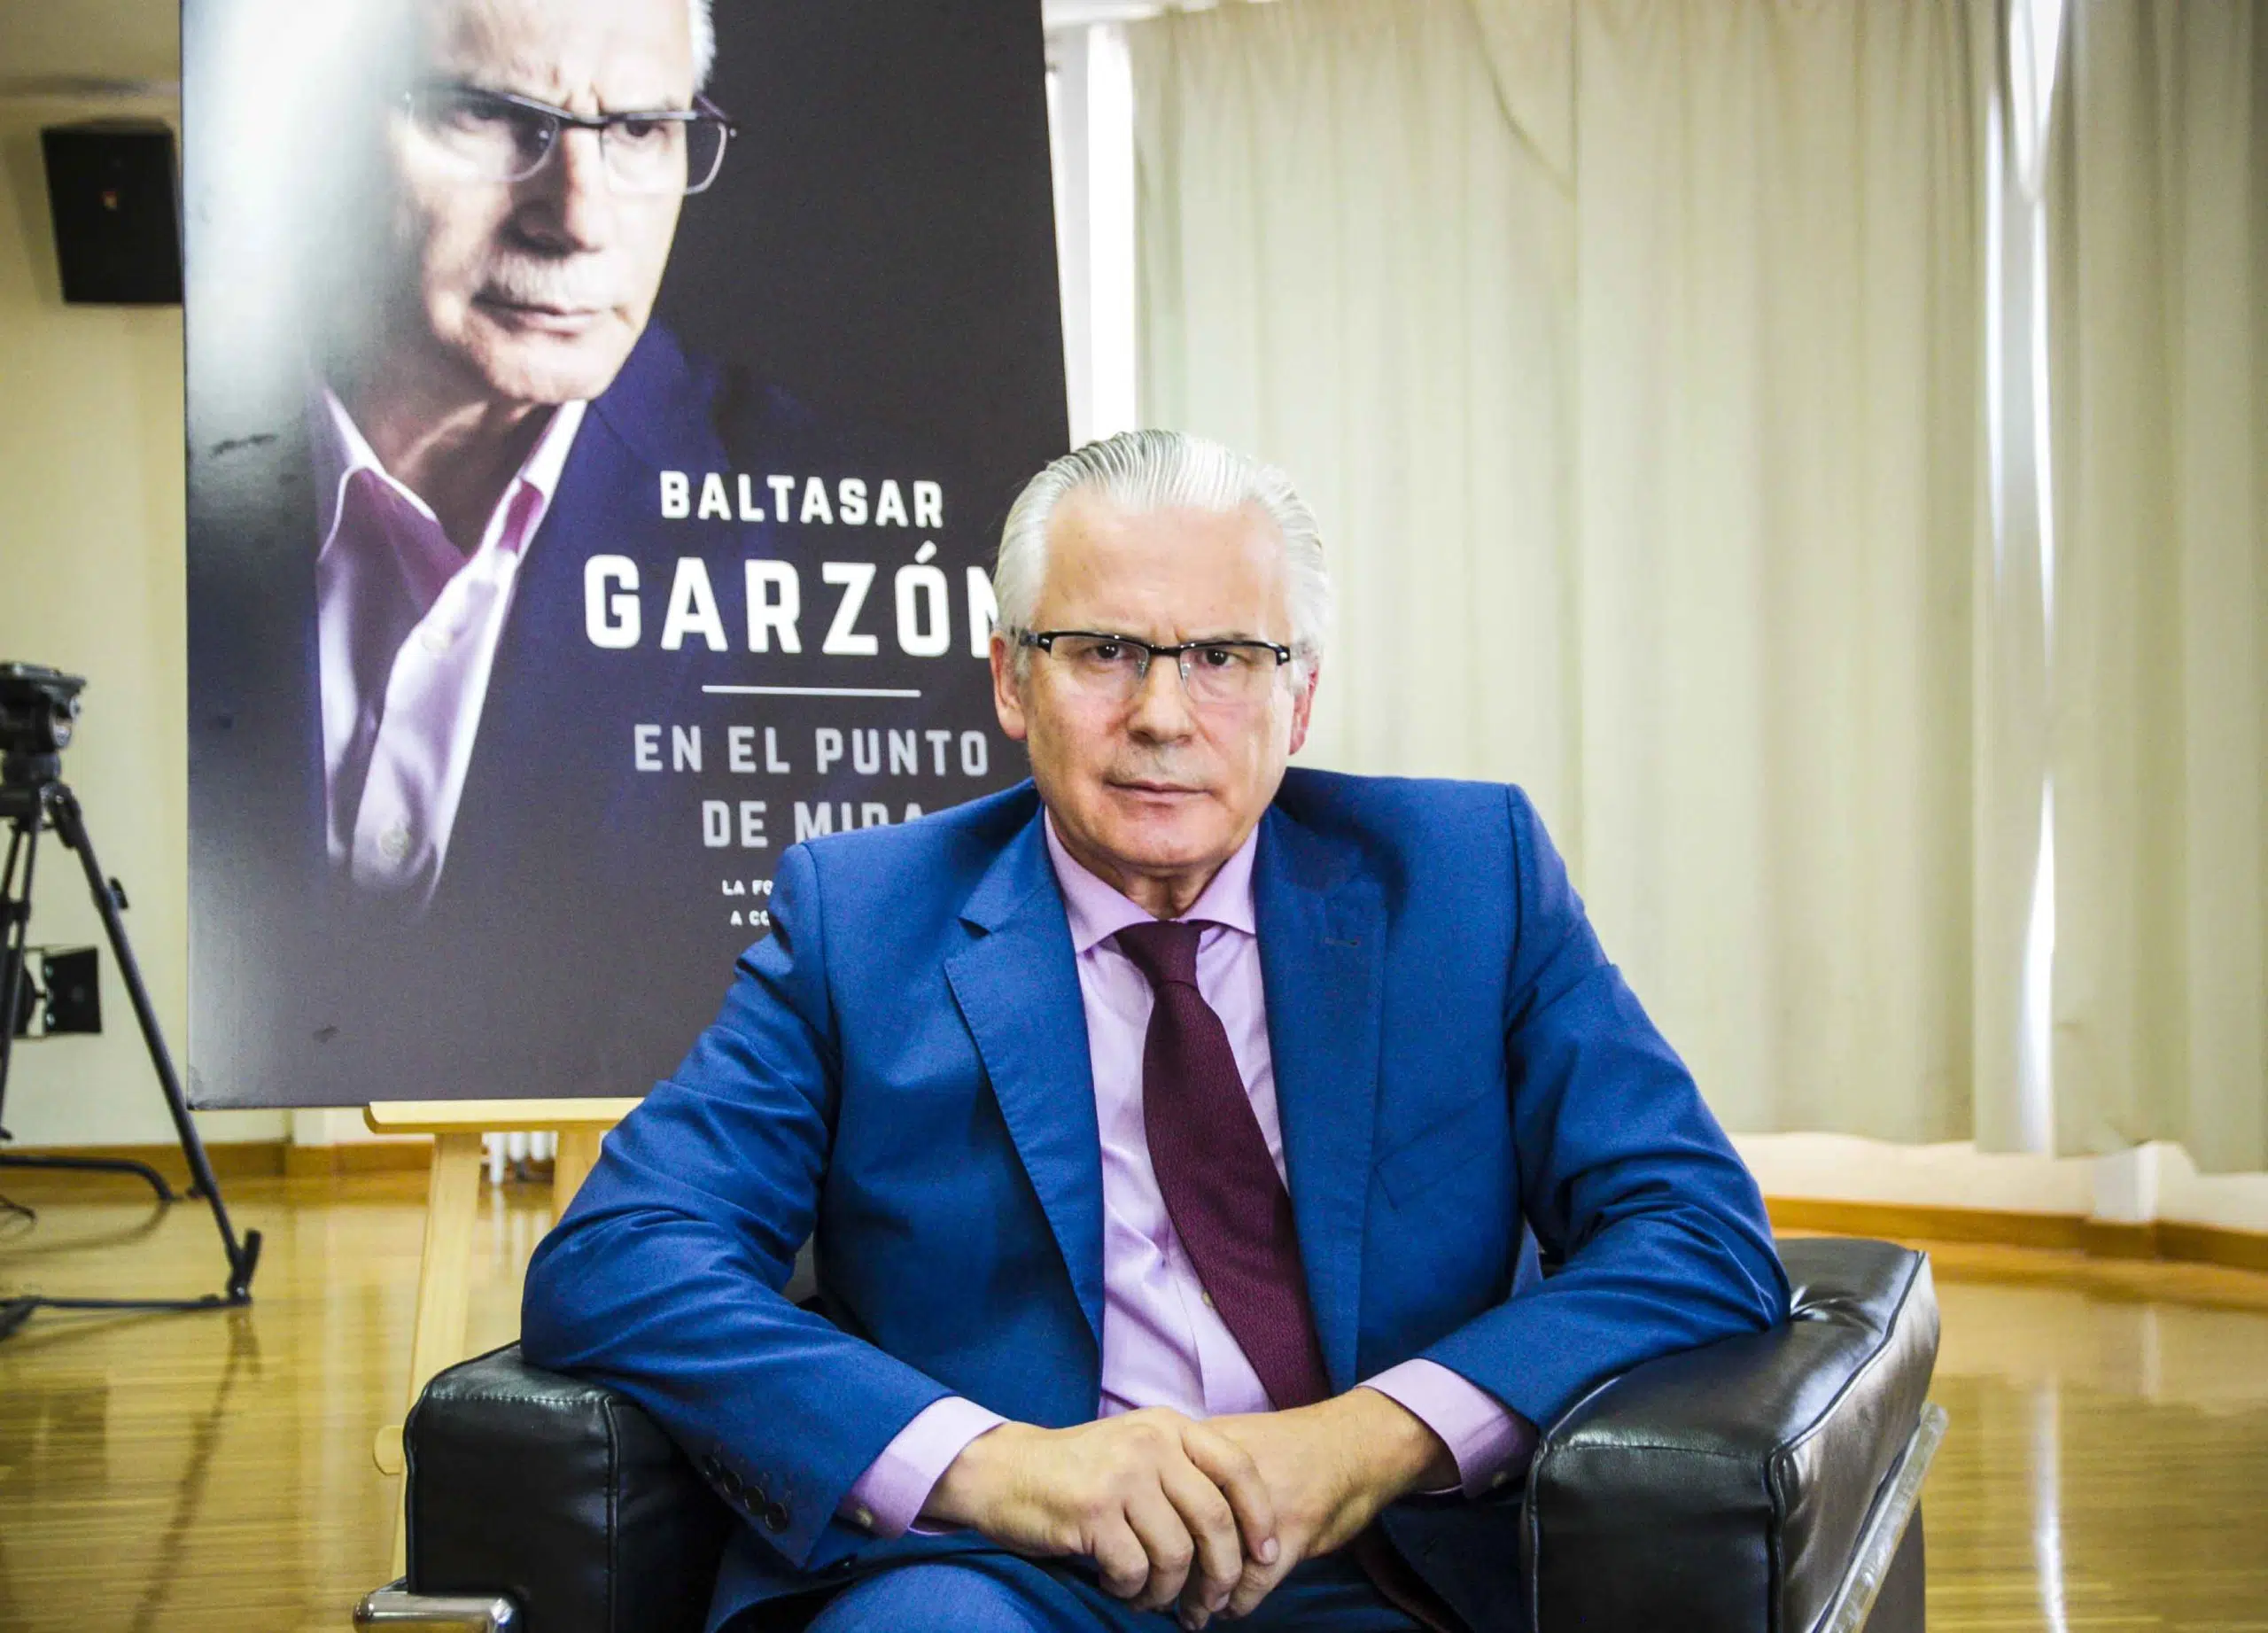 Baltasar Garzón pedirá su reingreso en la Carrera Judicial tras el dictamen del Comité de Derechos Humanos de la ONU